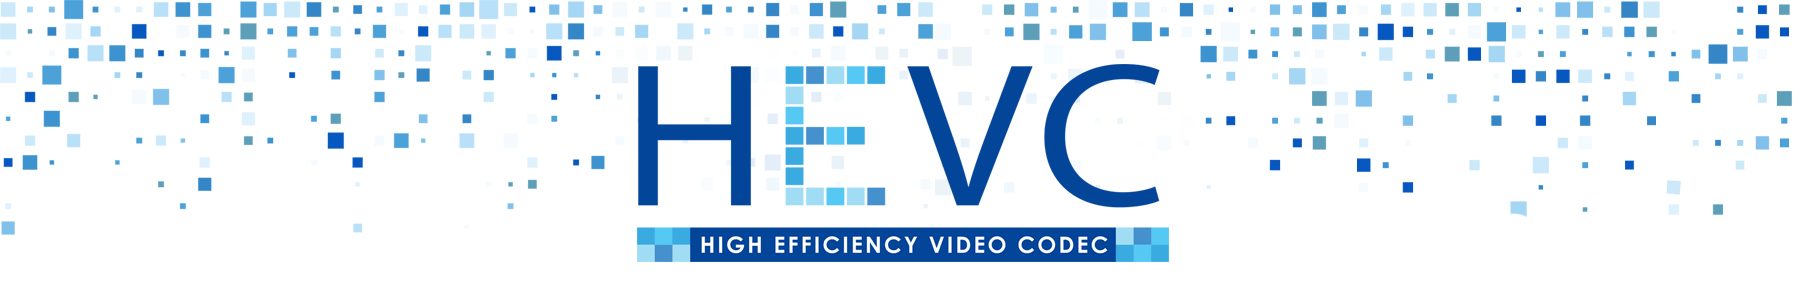 HEVC logo icon